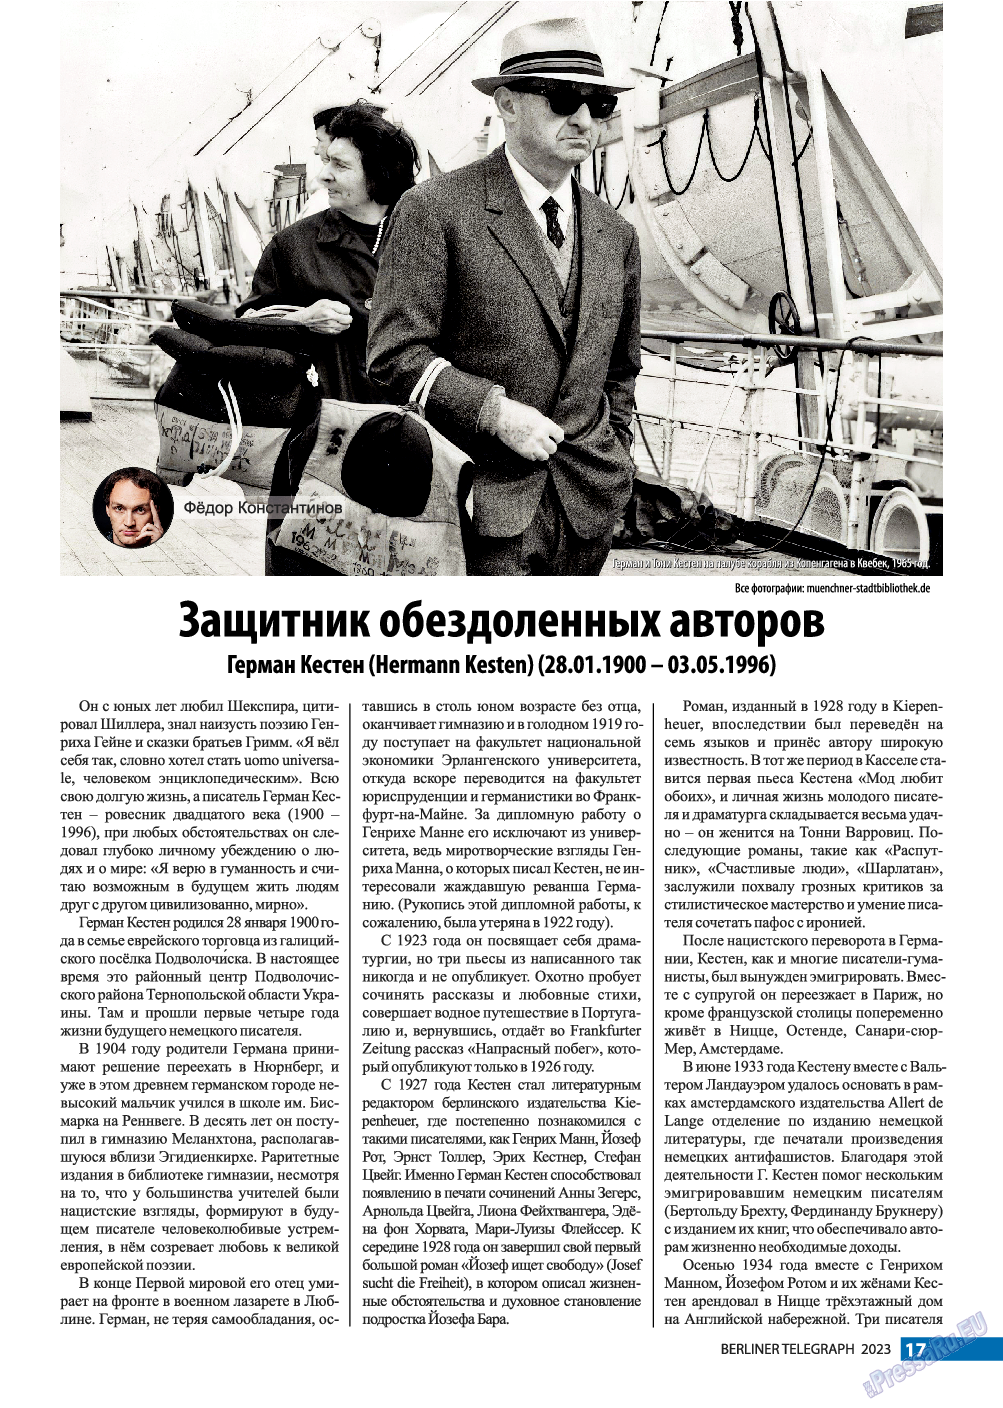 Берлинский телеграф, журнал. 2023 №2 стр.17